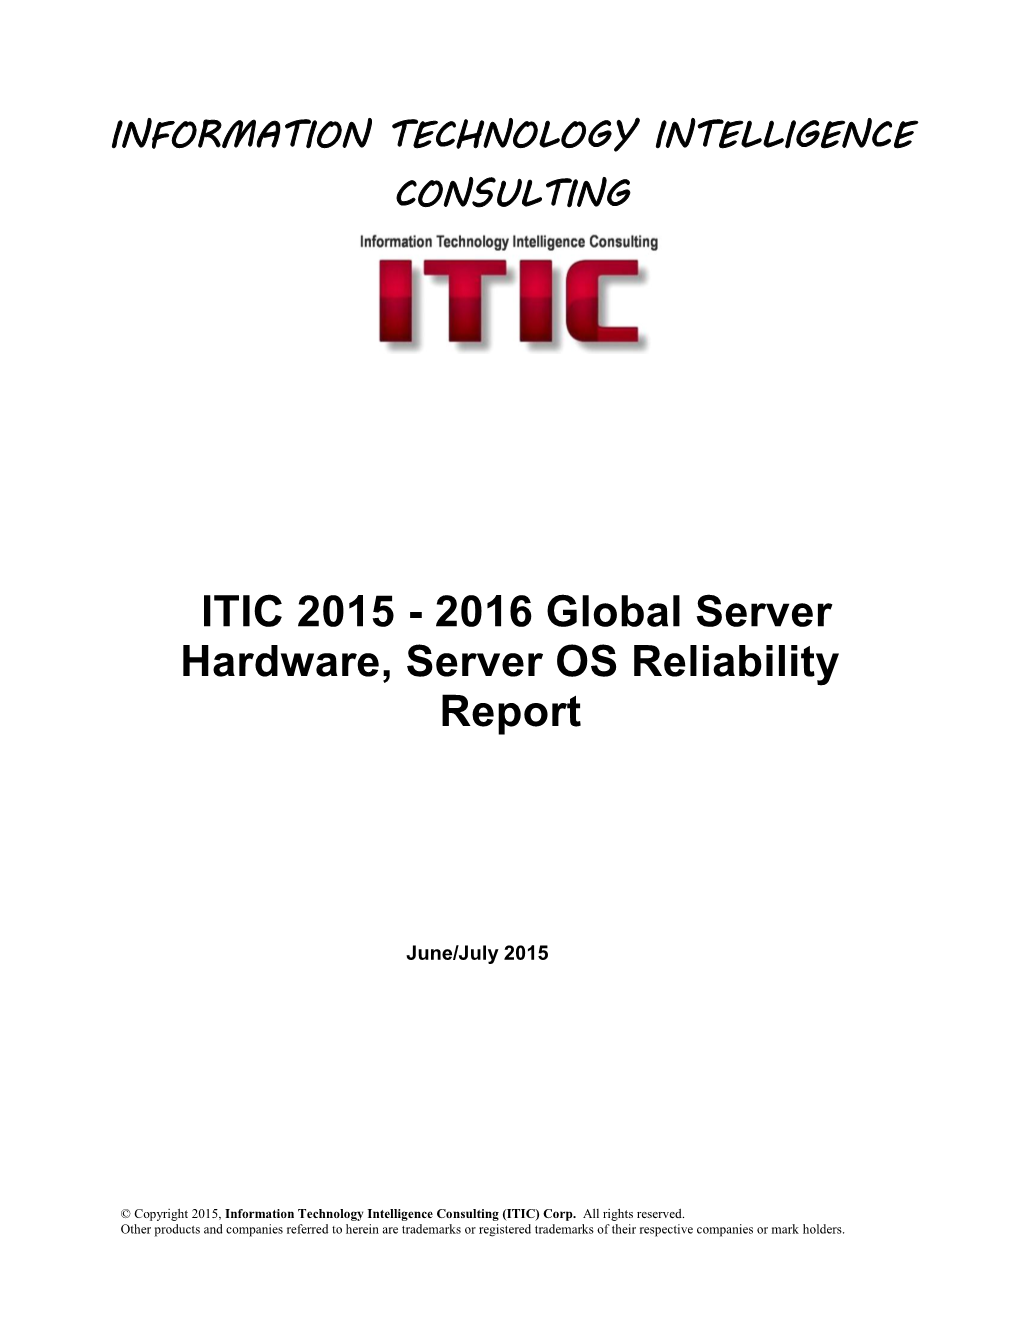 2016 Global Server Hardware, Server OS Reliability Report